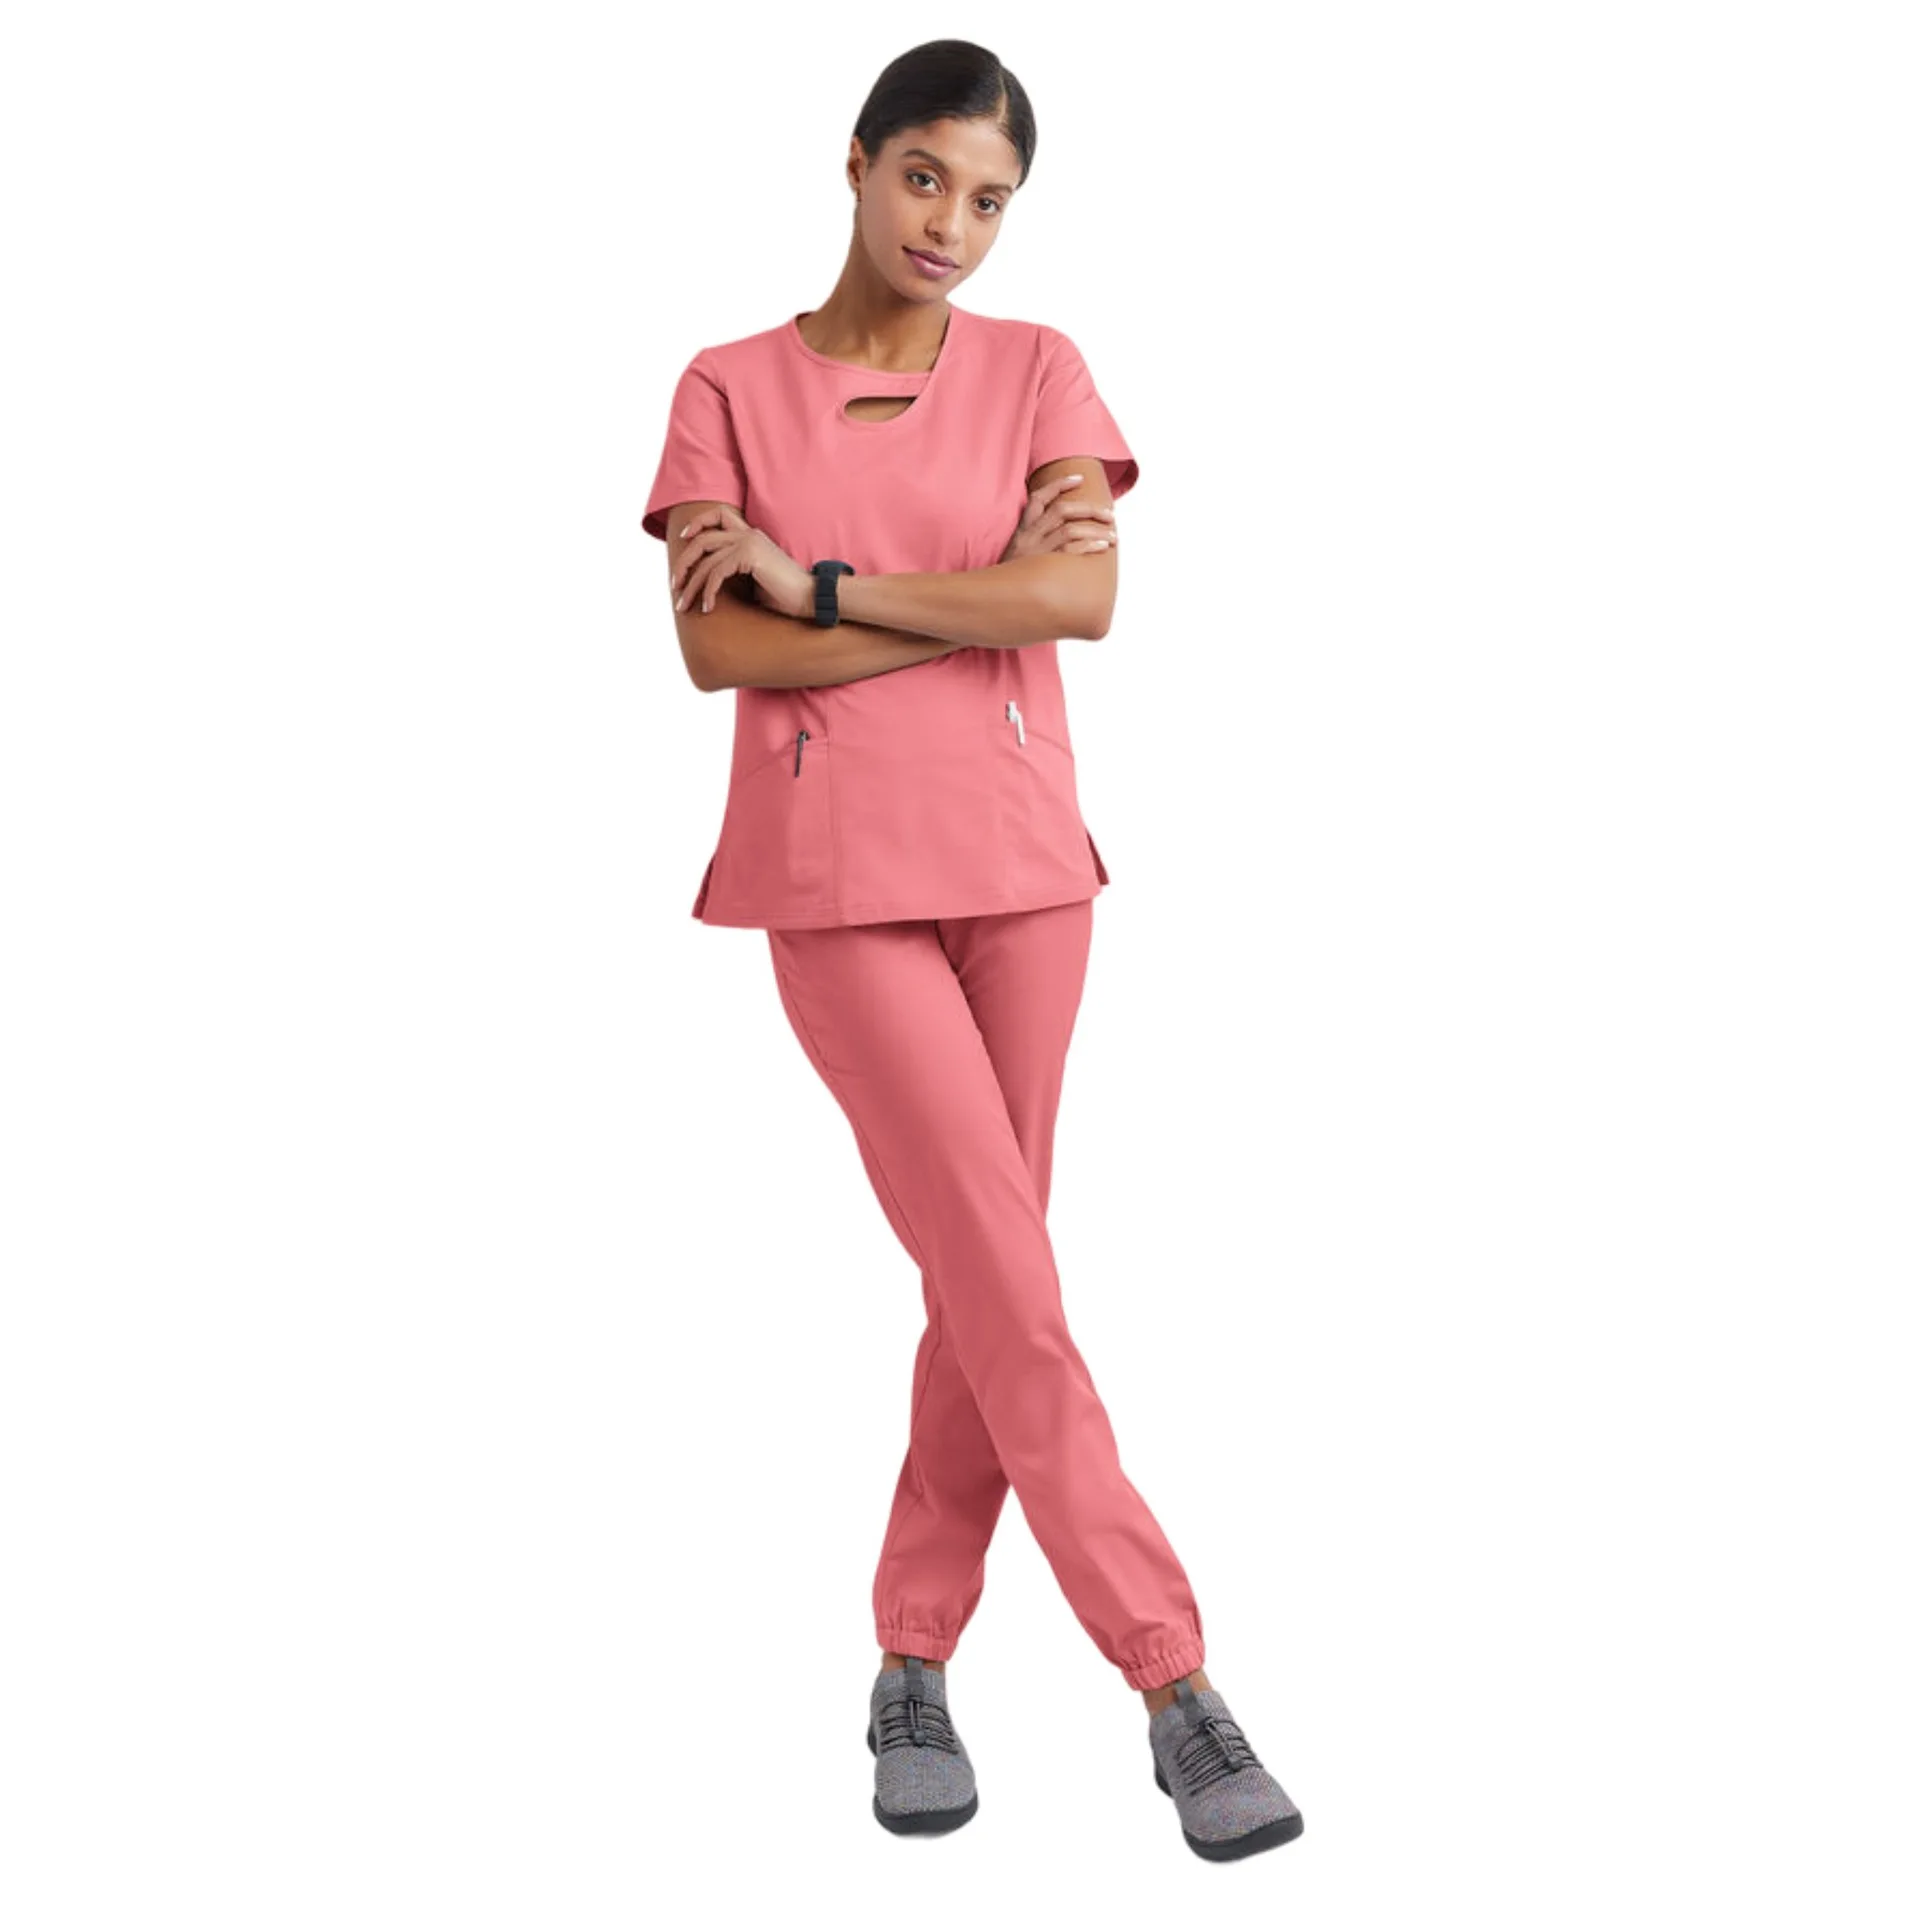 새로운 디자인의 병원 스크럽 세트, 간호 스판덱스 및 스트레치 의료 유니폼, 간호사 유니폼, 여성용 스크럽 세트